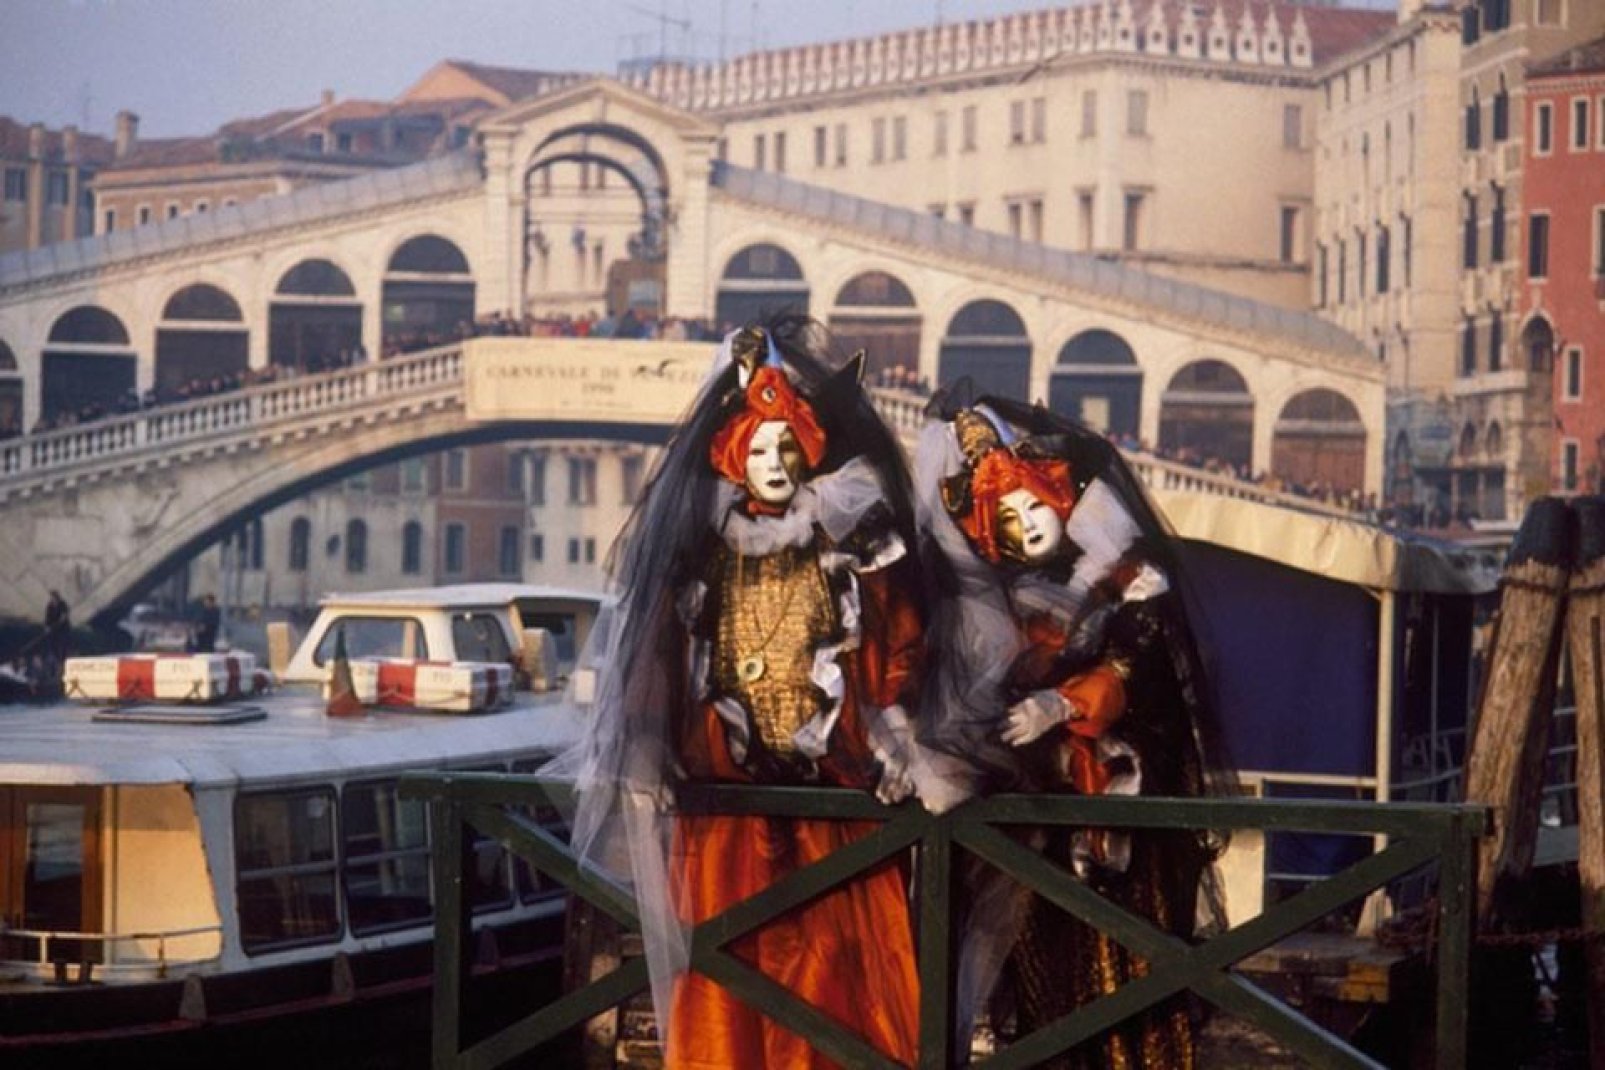 Il carnevale veneziano è un grande e spettacolare evento turistico, che richiama migliaia di visitatori da tutto il mondo che si riversano in città per assistere alla festa